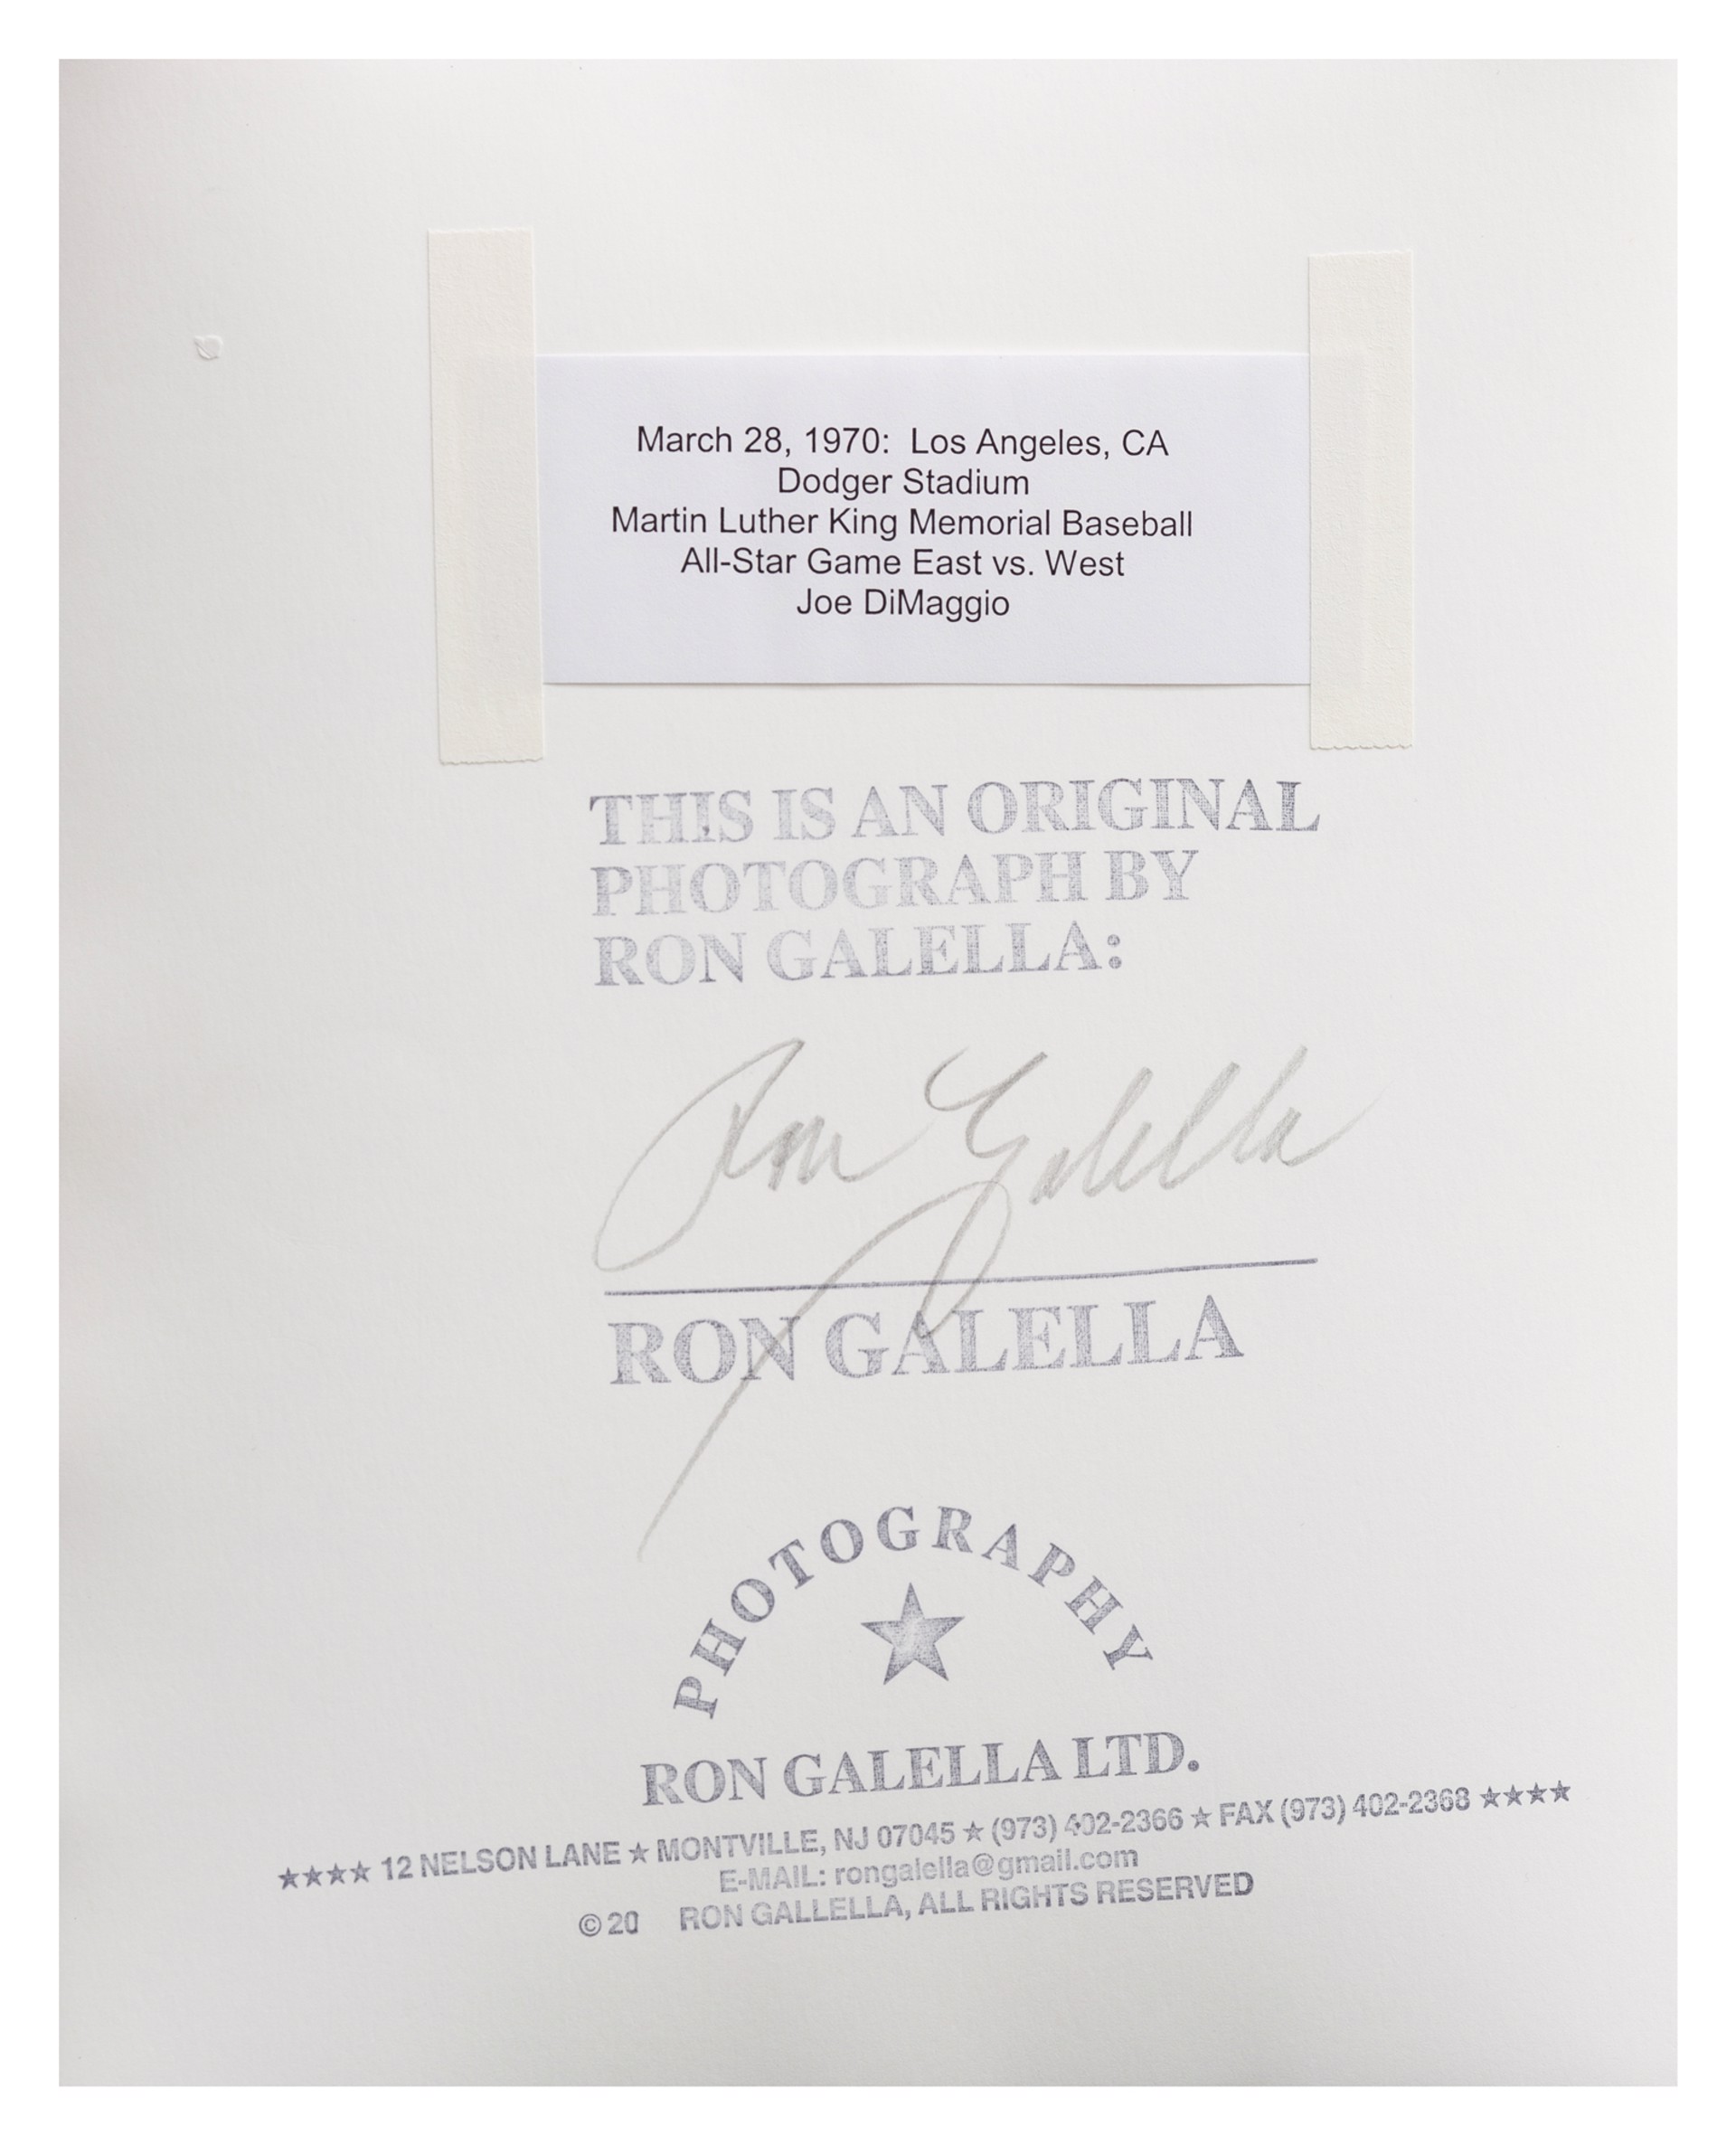 Joe DiMaggio by Ron Galella